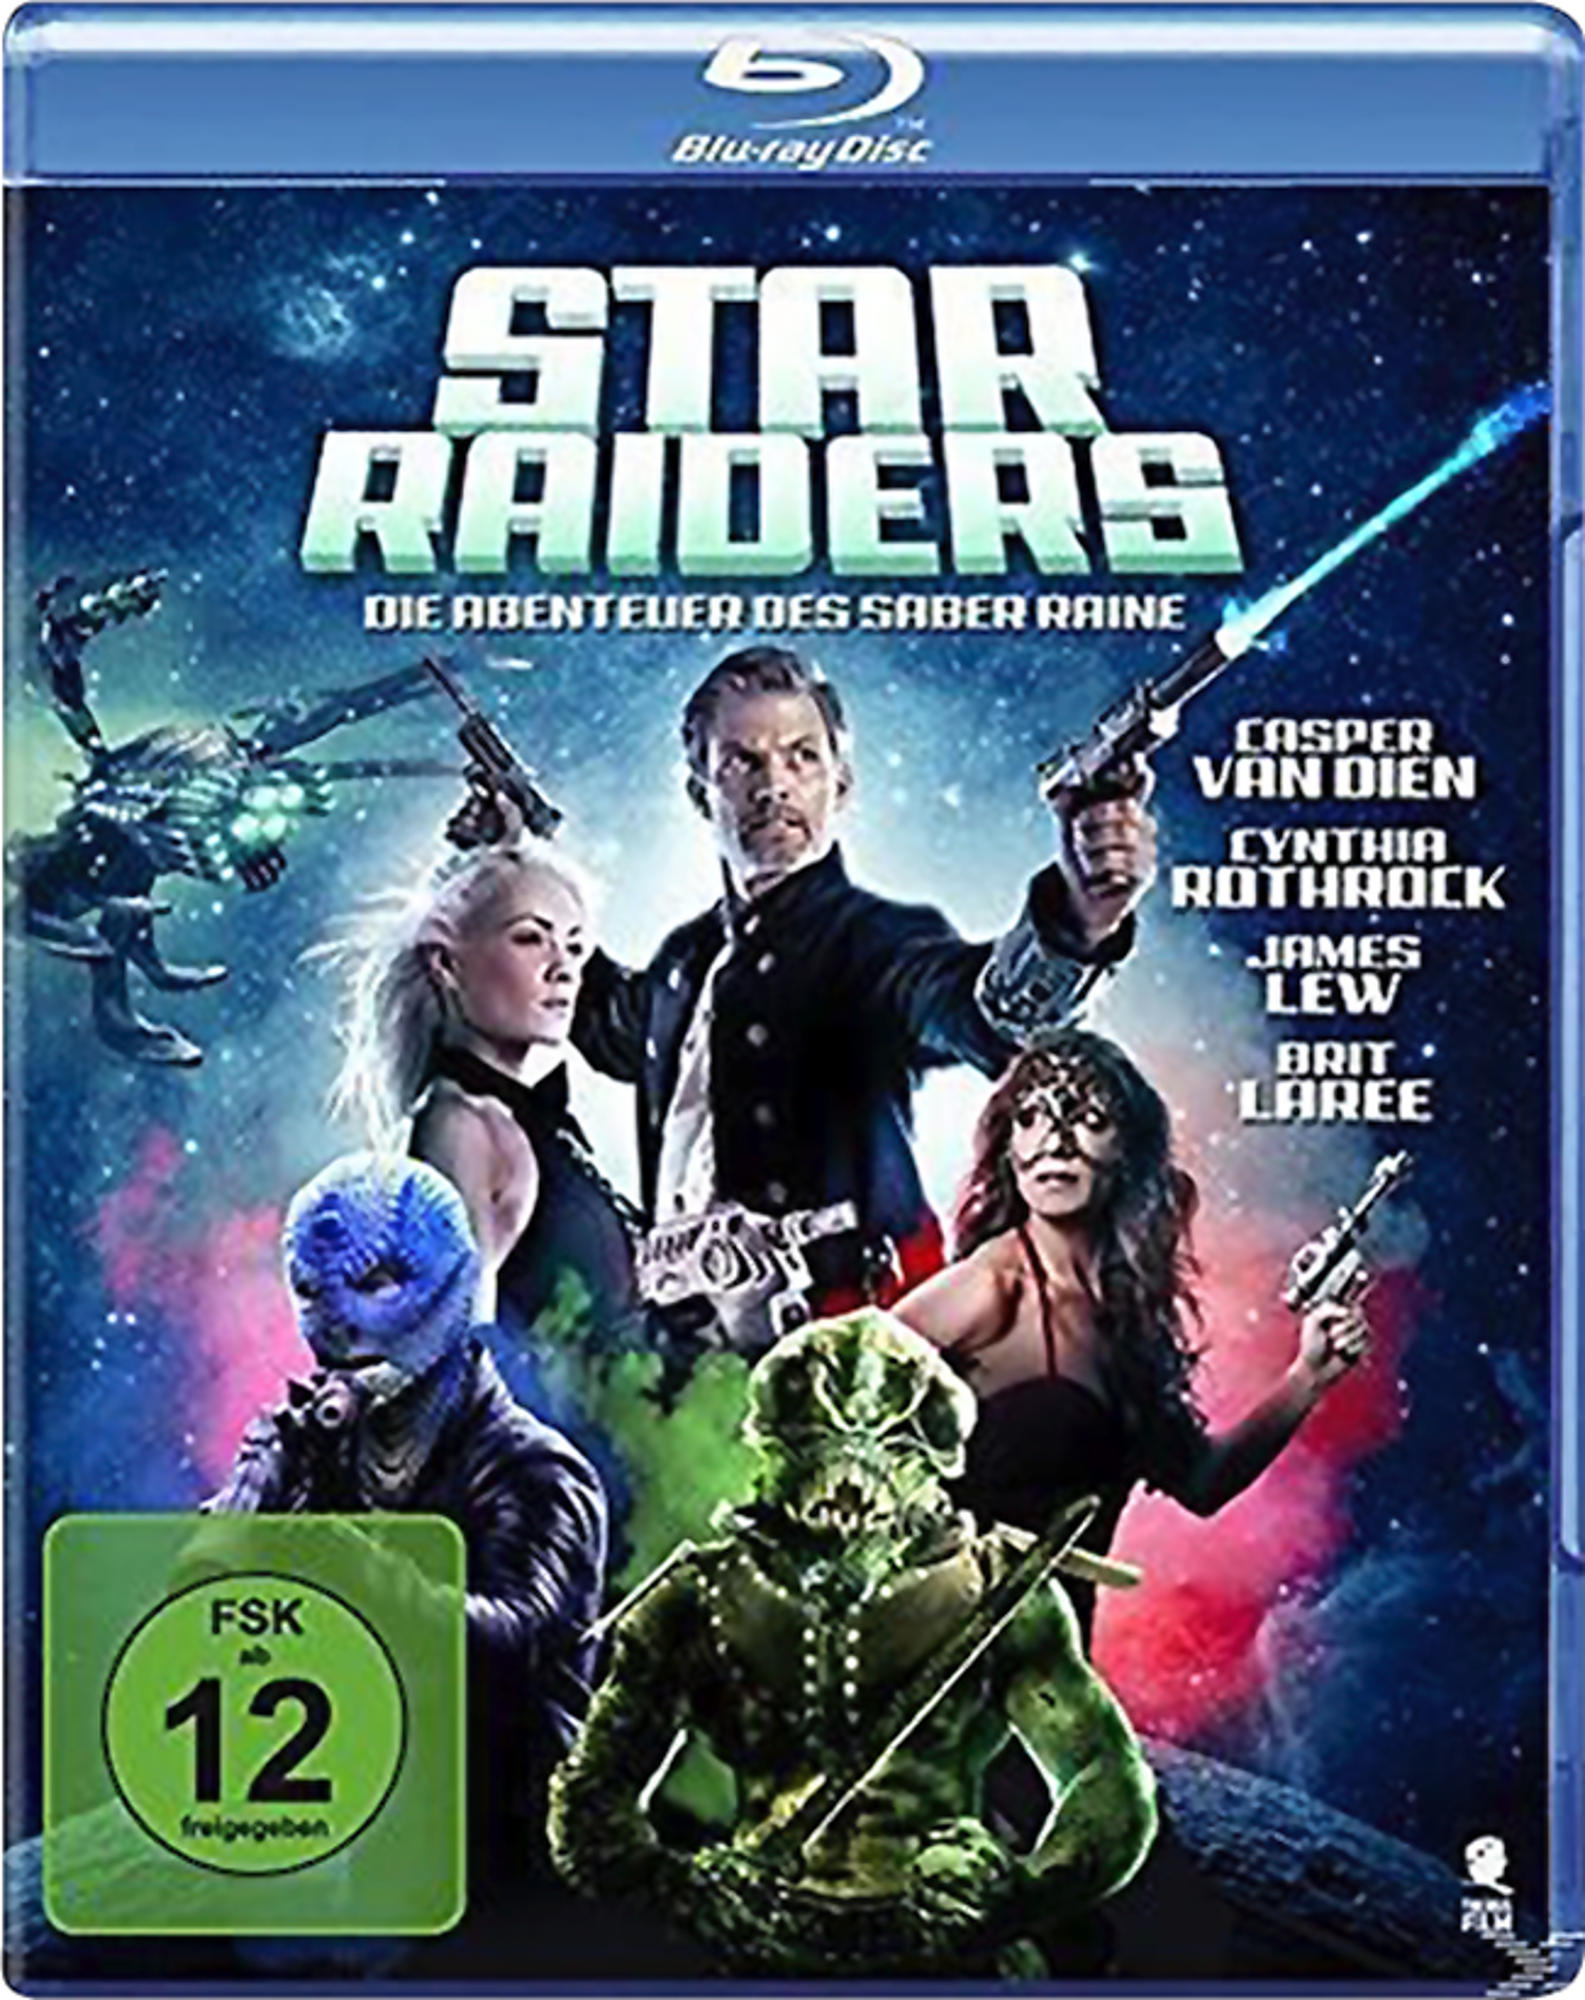 Die Star Saber Blu-ray Abenteuer - des Raine Raiders